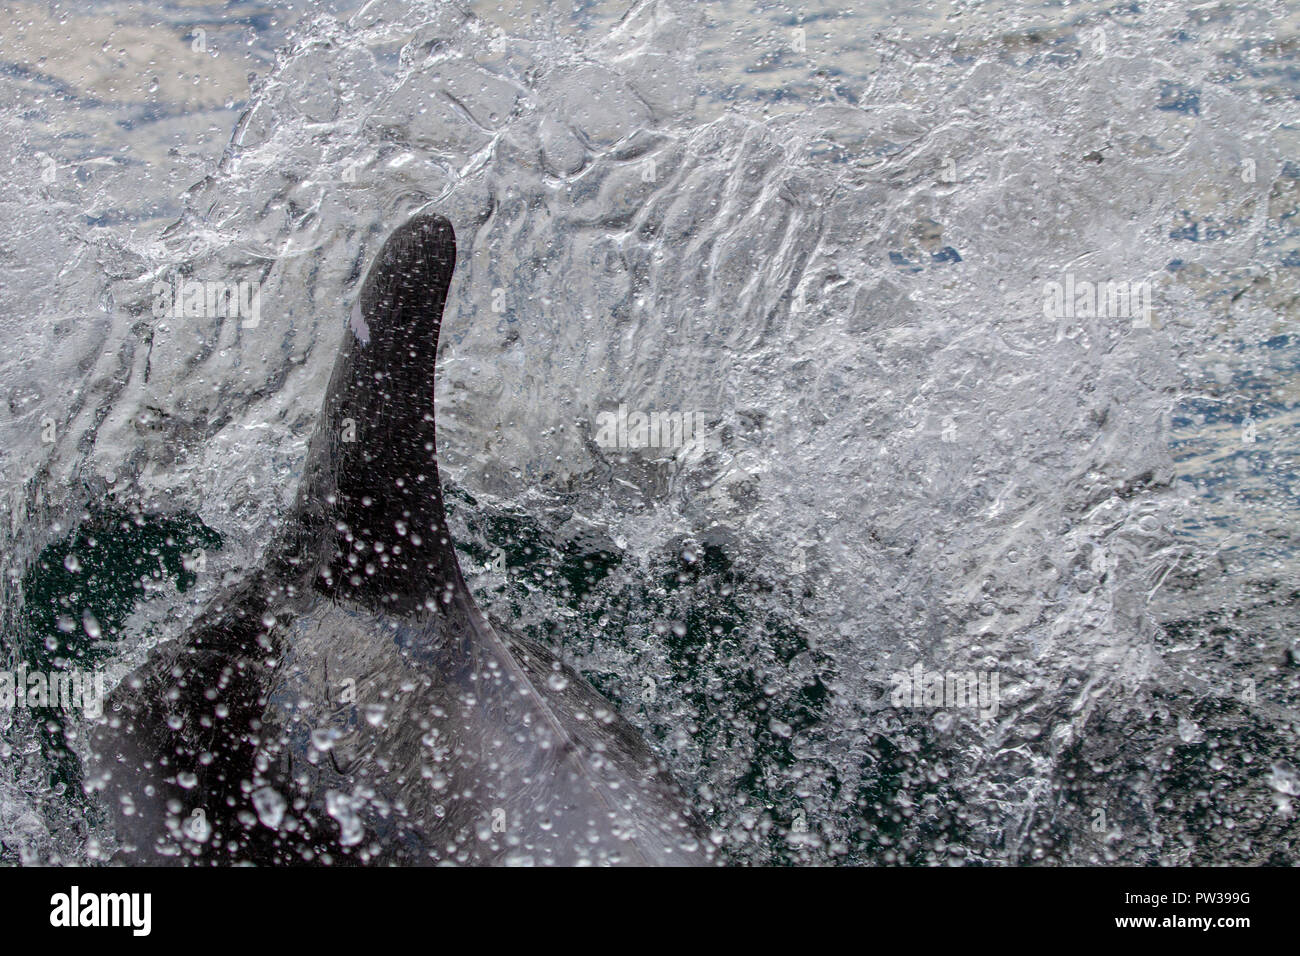 White-beaked dolphin breaking water Stock Photo